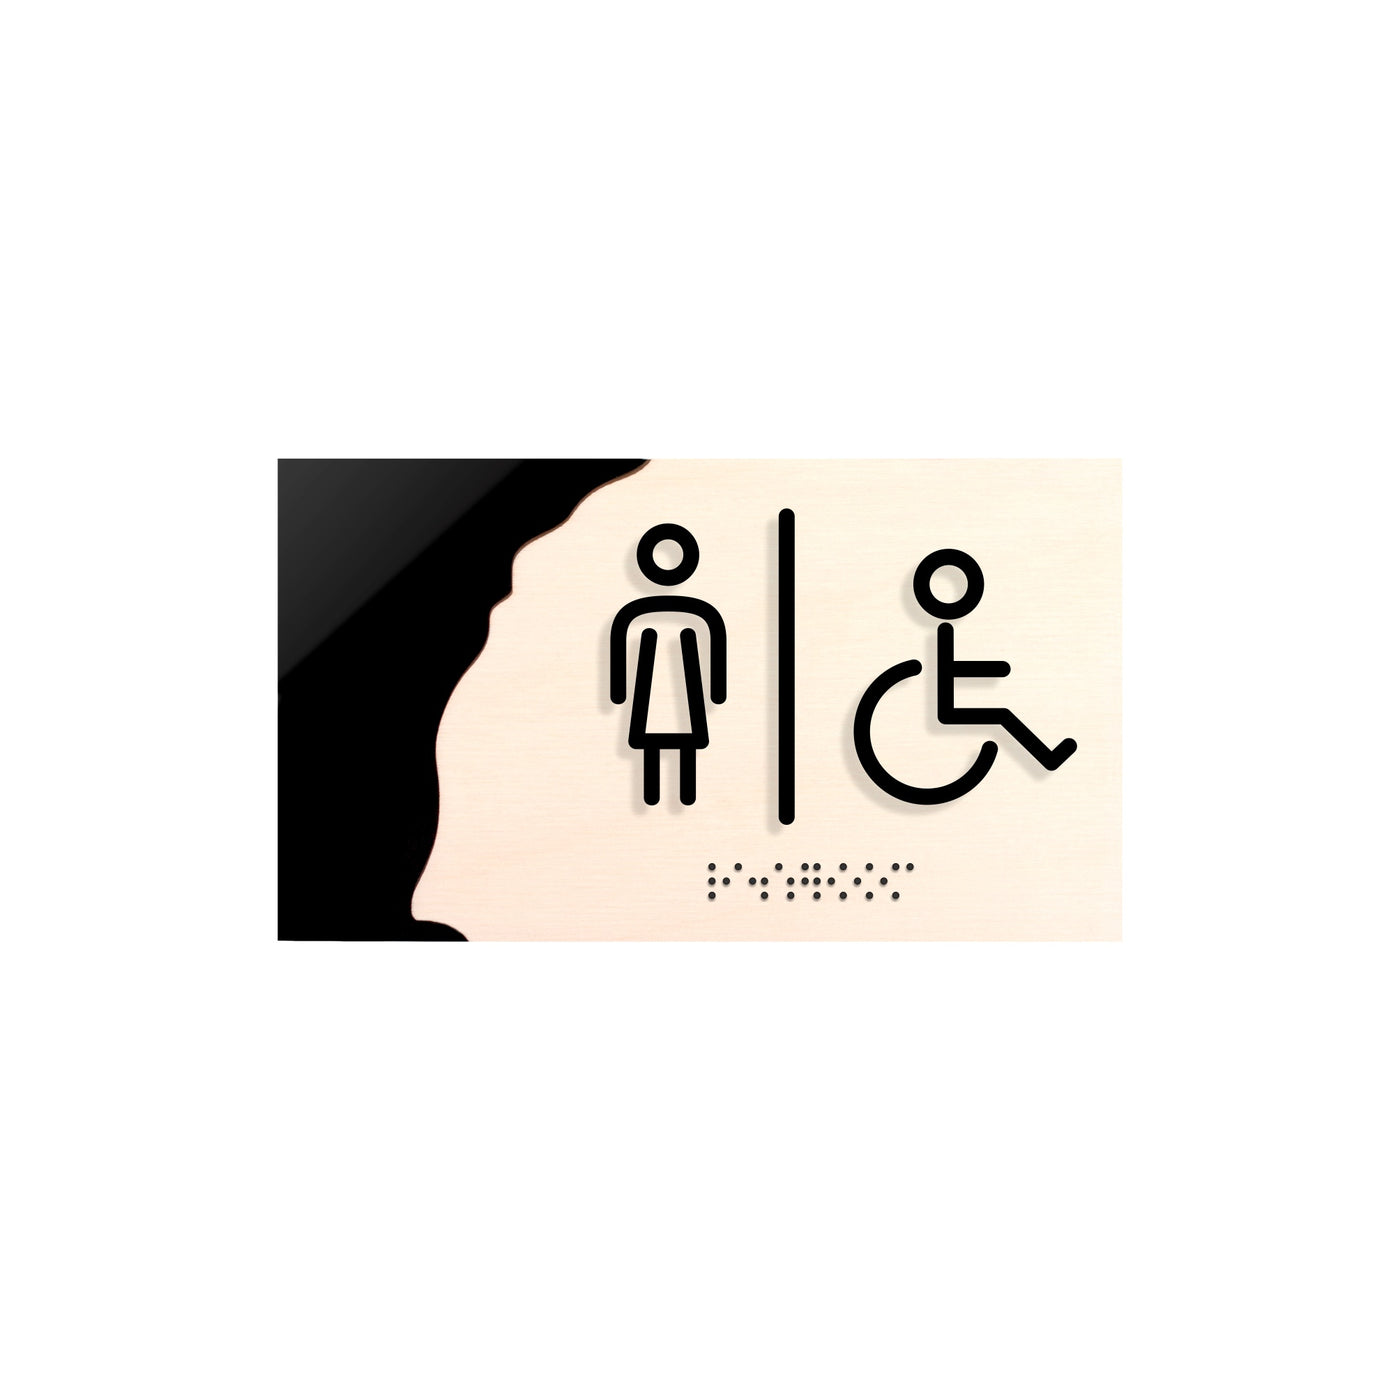 Women & Disabled Person Restroom Sign "Sherwood" Design